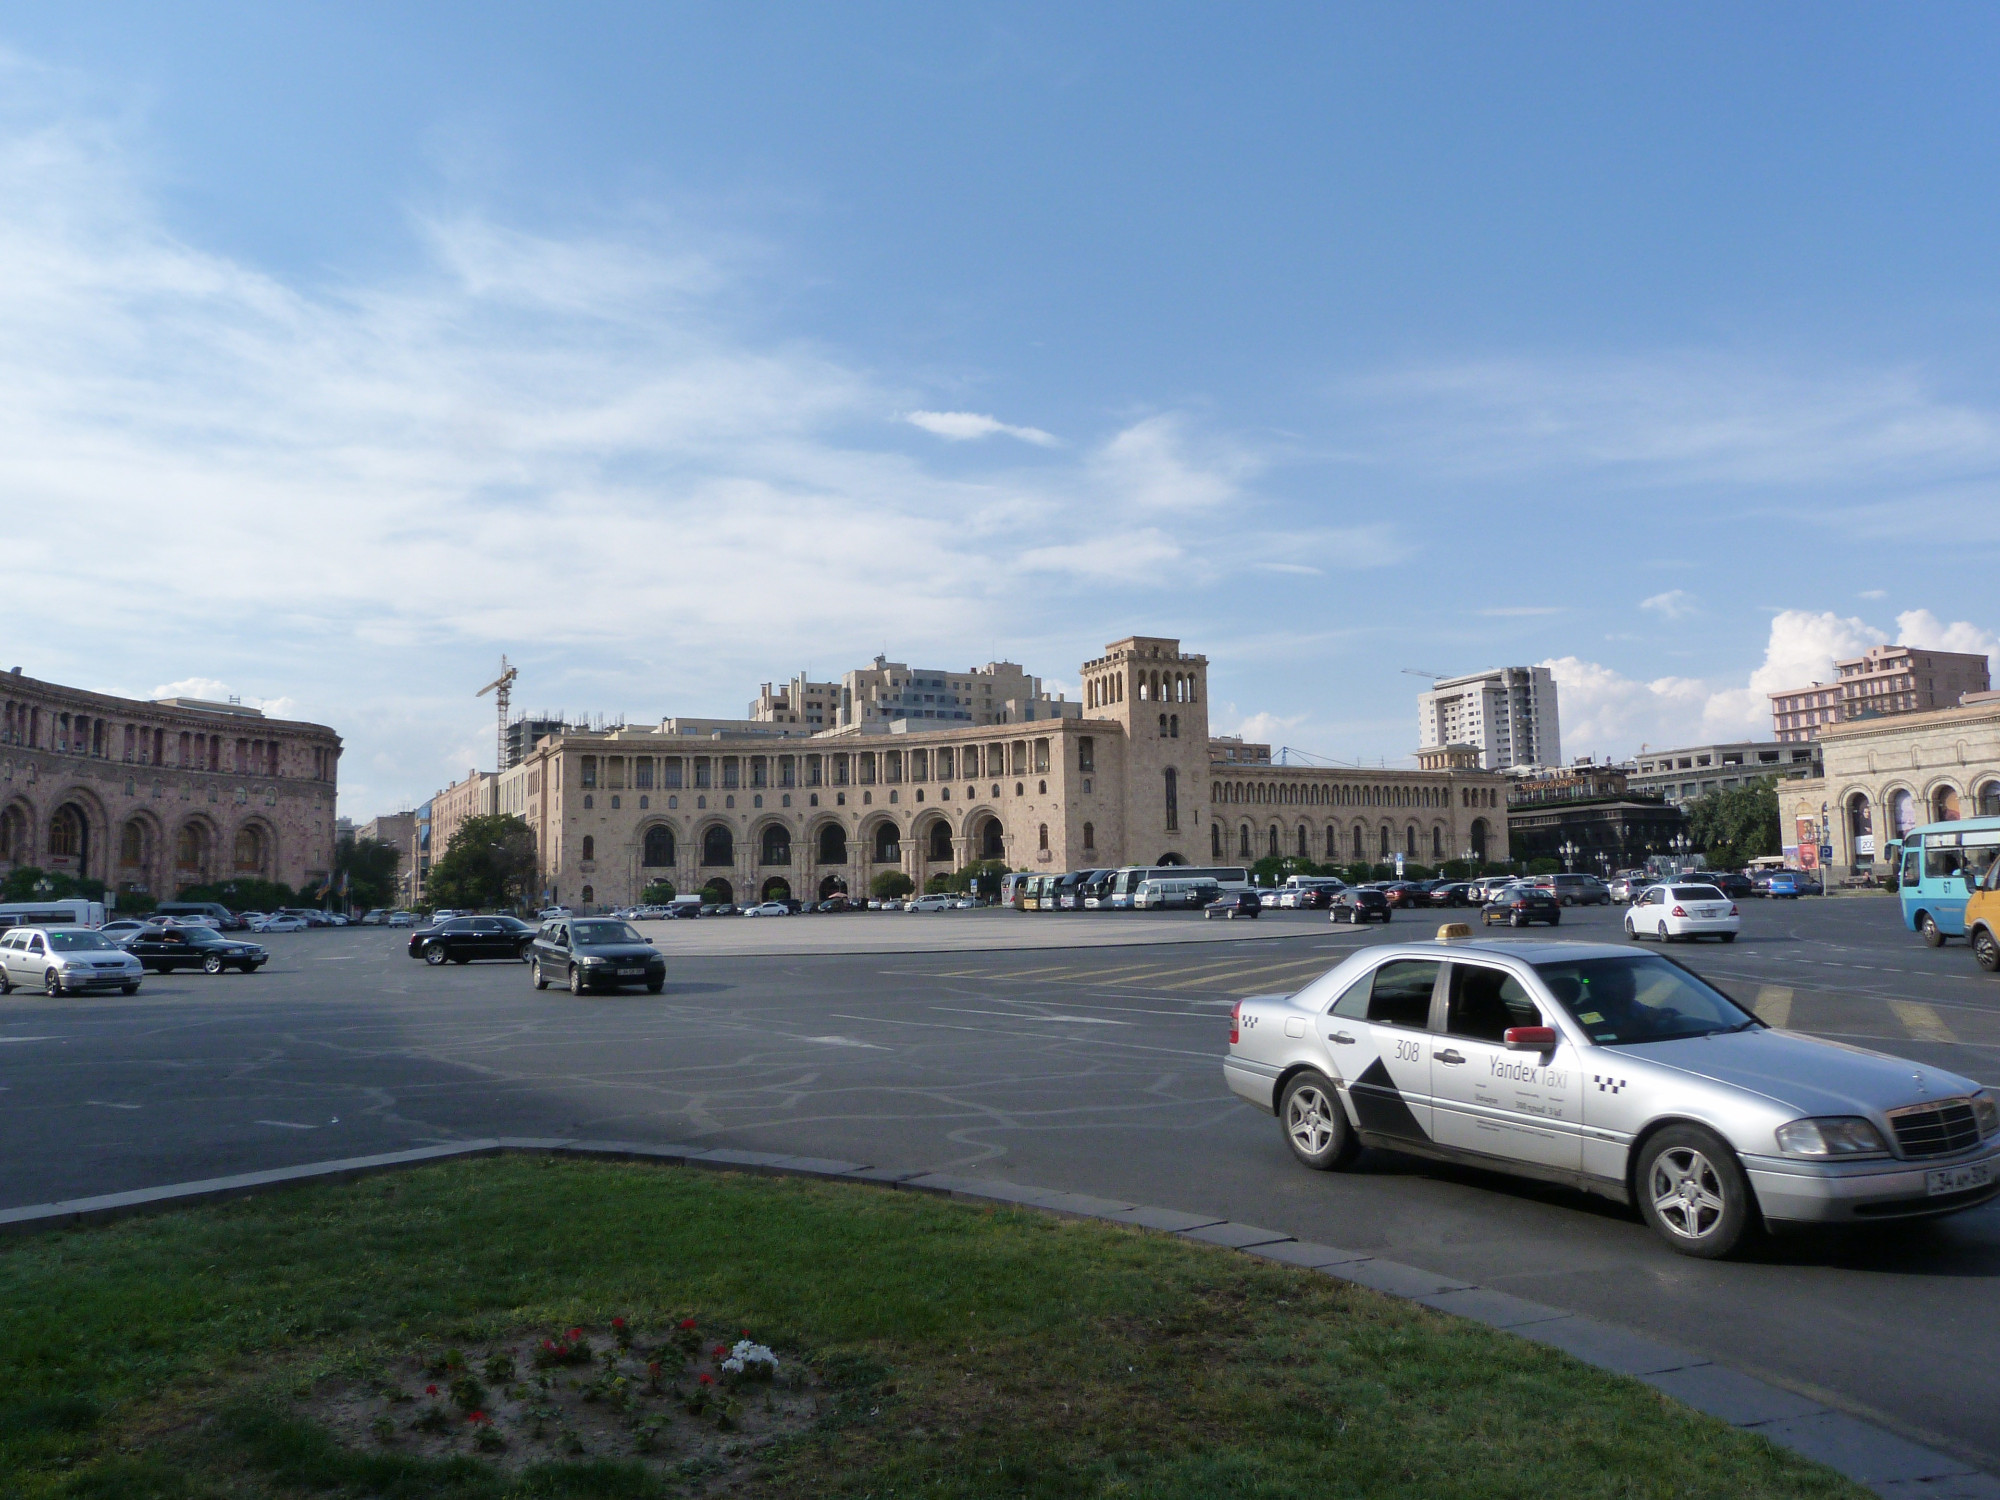 Republic Square, Armenia